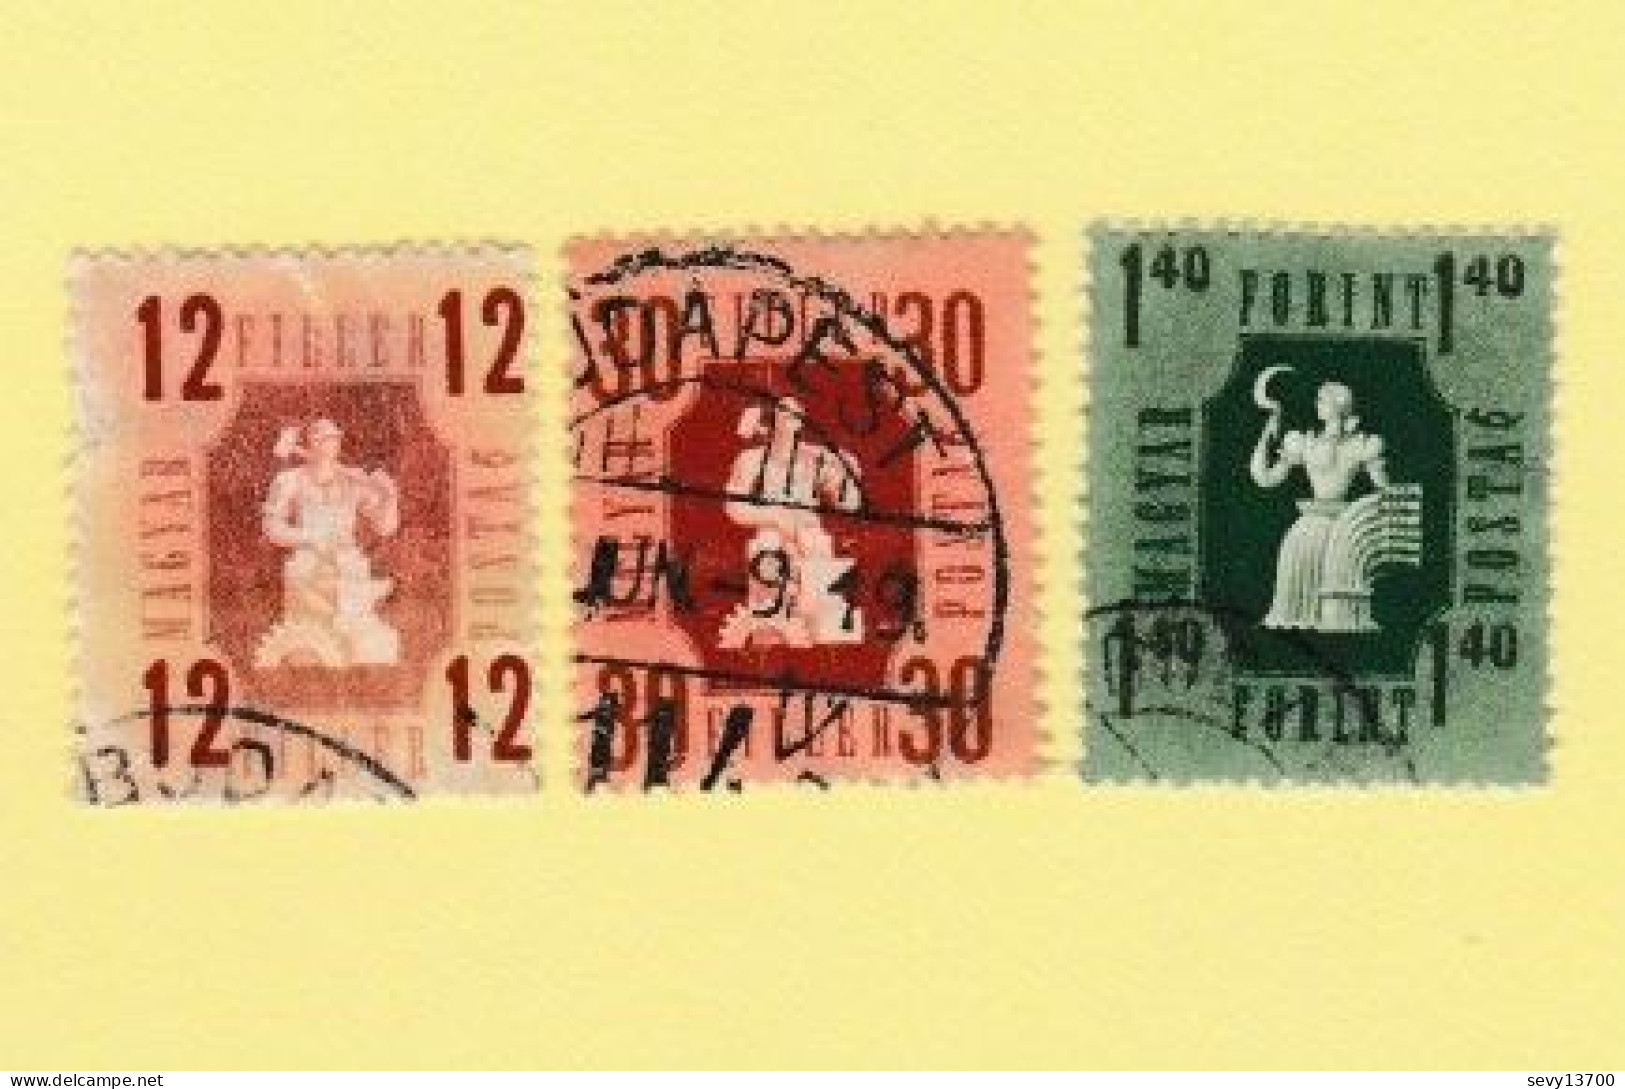 Hongrie - Magyar Posta - lot de 51 timbres taxe et de service